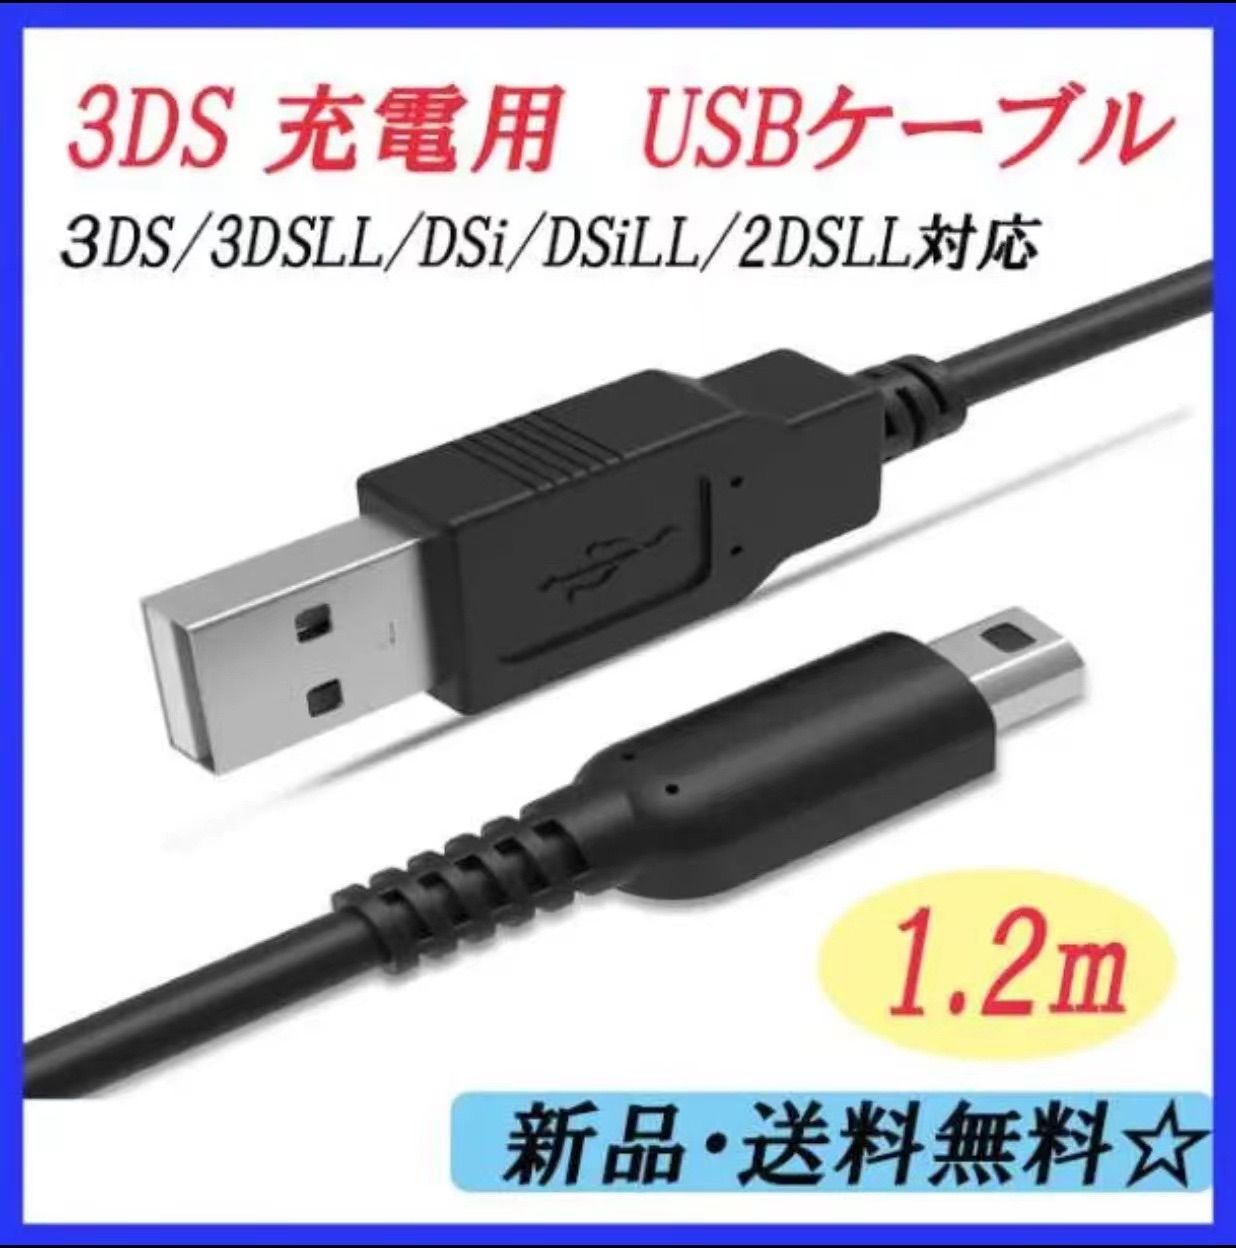 奉呈 ニンテンドー3DS 2DS USB充電ケーブル 充電器 USBタイプ 1.2m